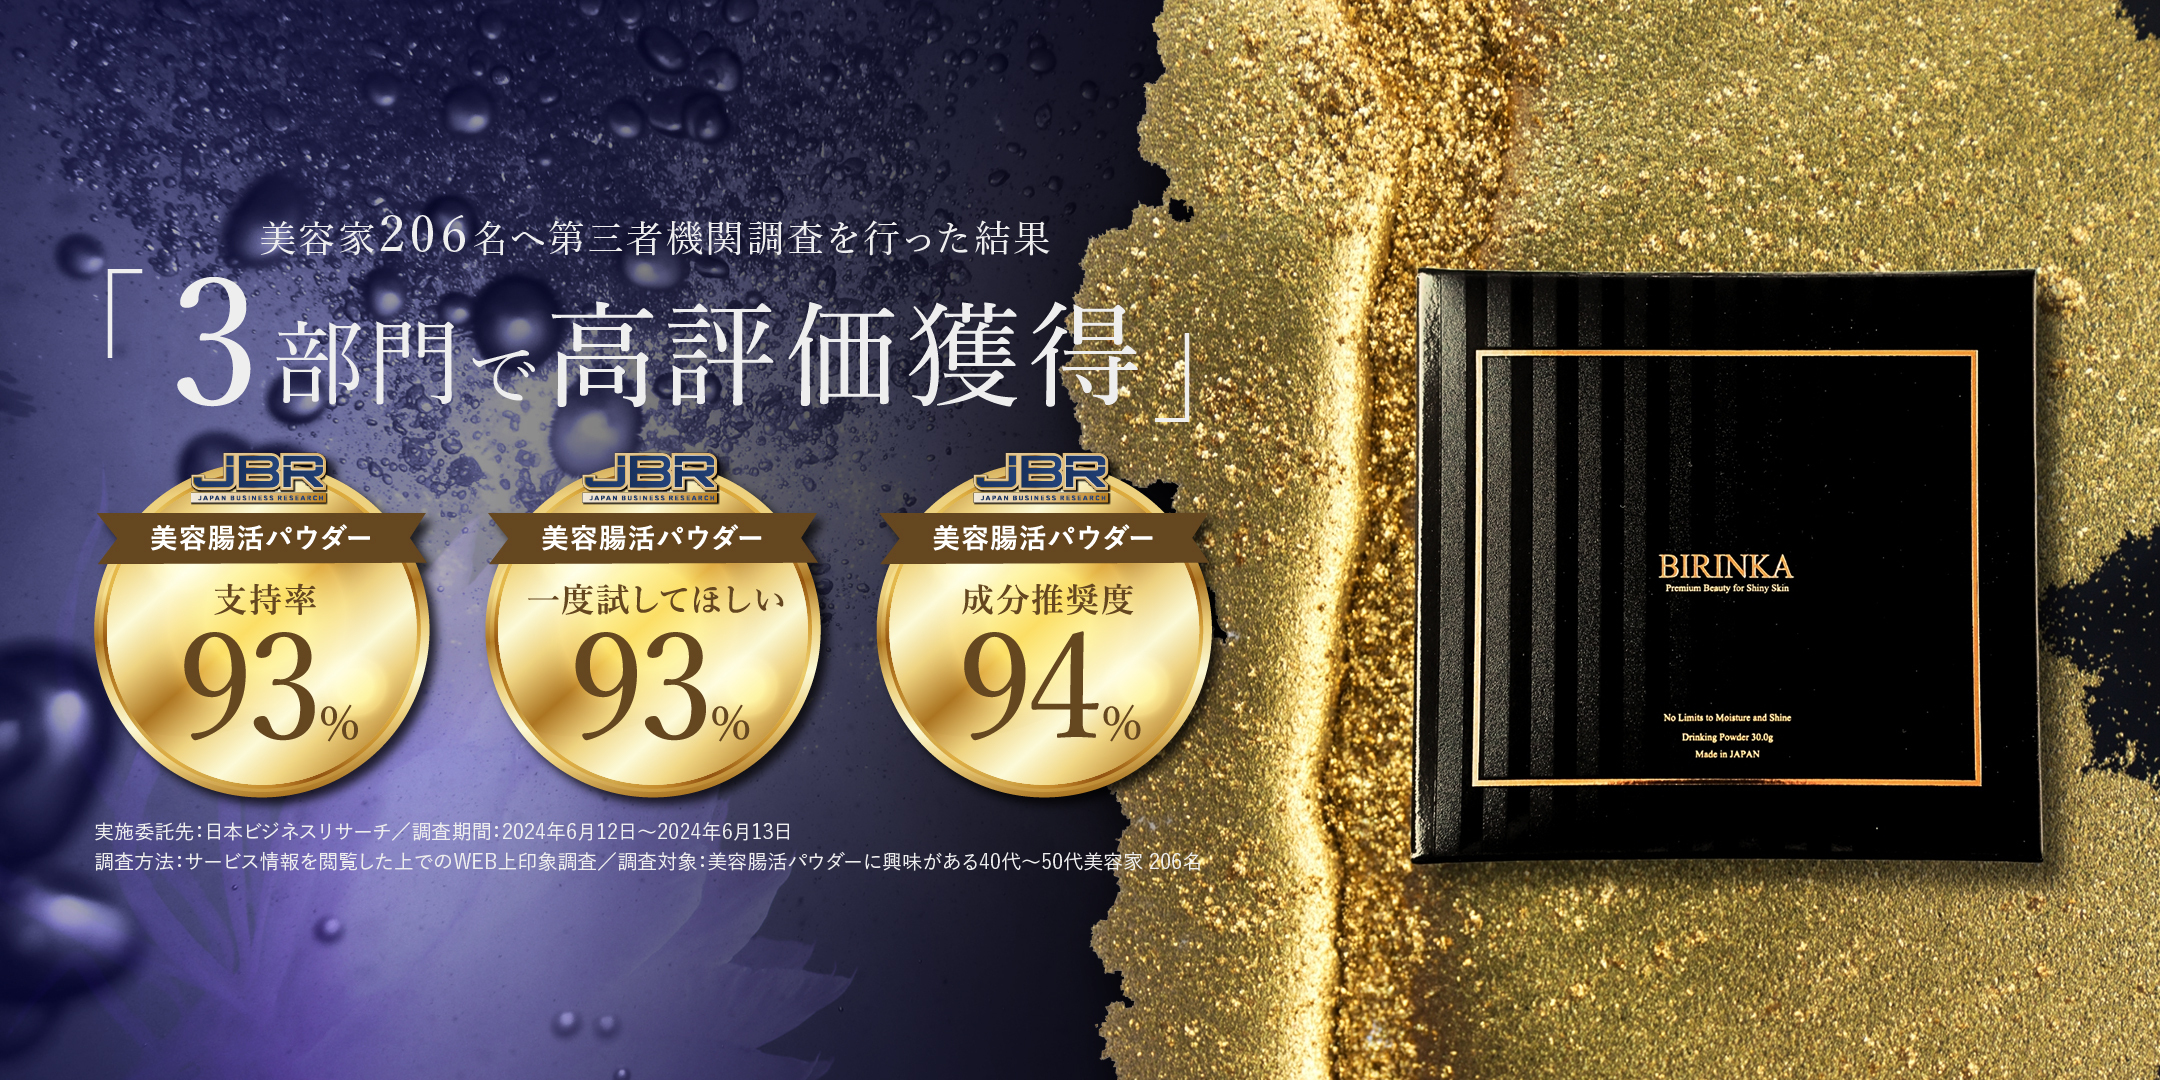 FRESH＆Co.の飲むエイジングケア「BIRINKA 美凛華」
美容家206名による調査の結果、3部門で高評価を獲得